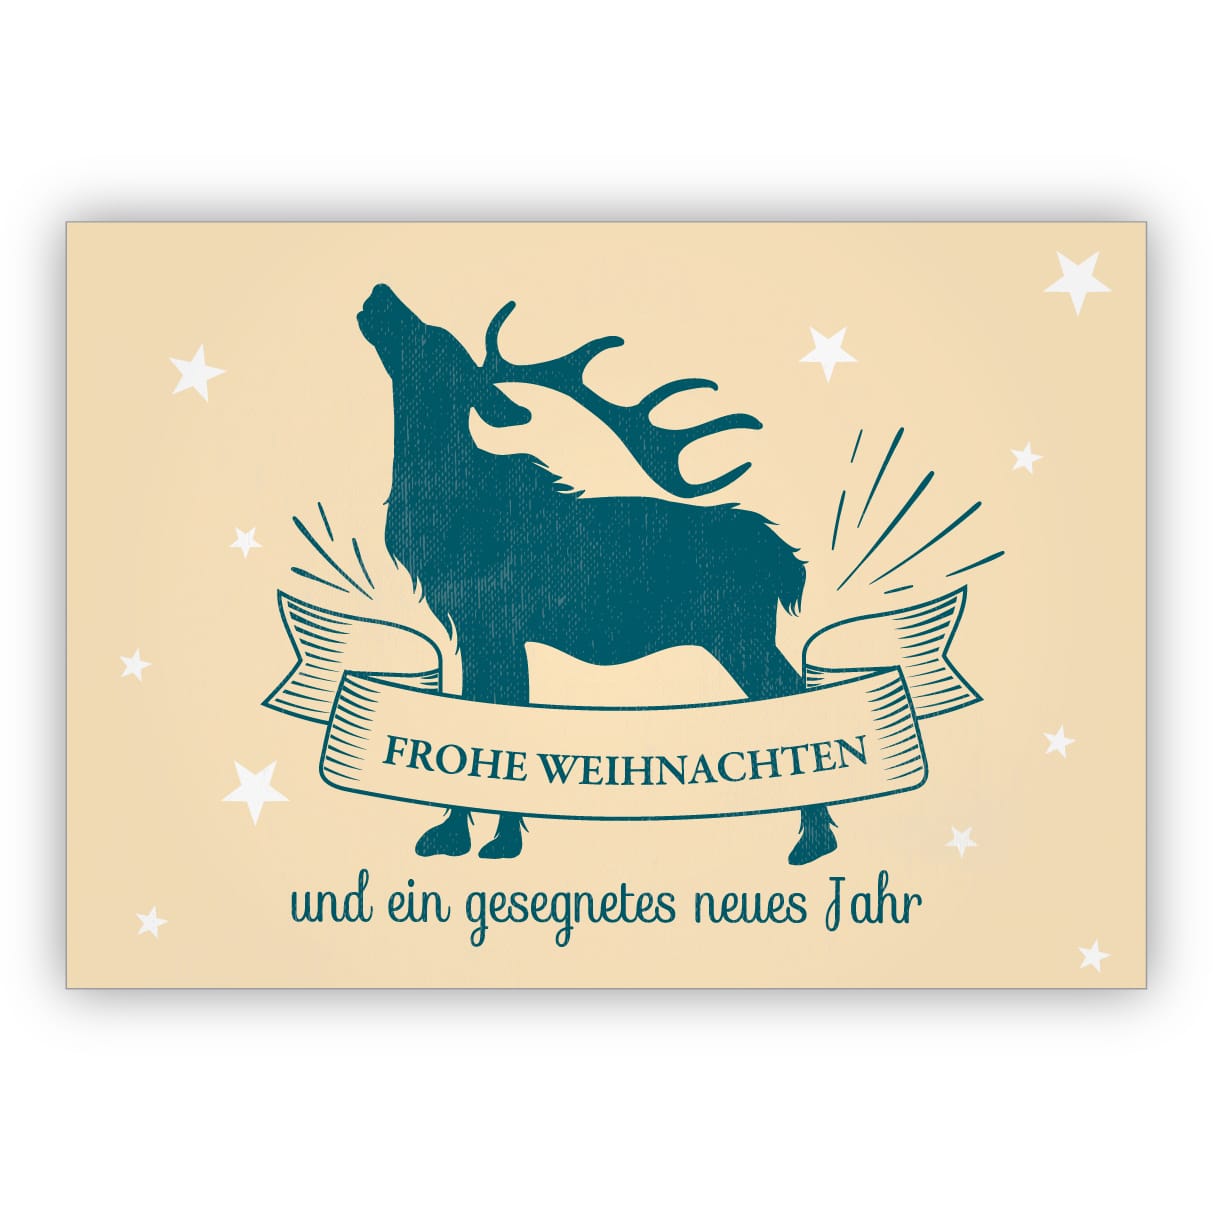 Coole Retro Weihnachtskarte Mit Rohrendem Hisch Frohe Weihnachten Und Ein Gesegnetes Neues Jahr Kartenkaufrausch De